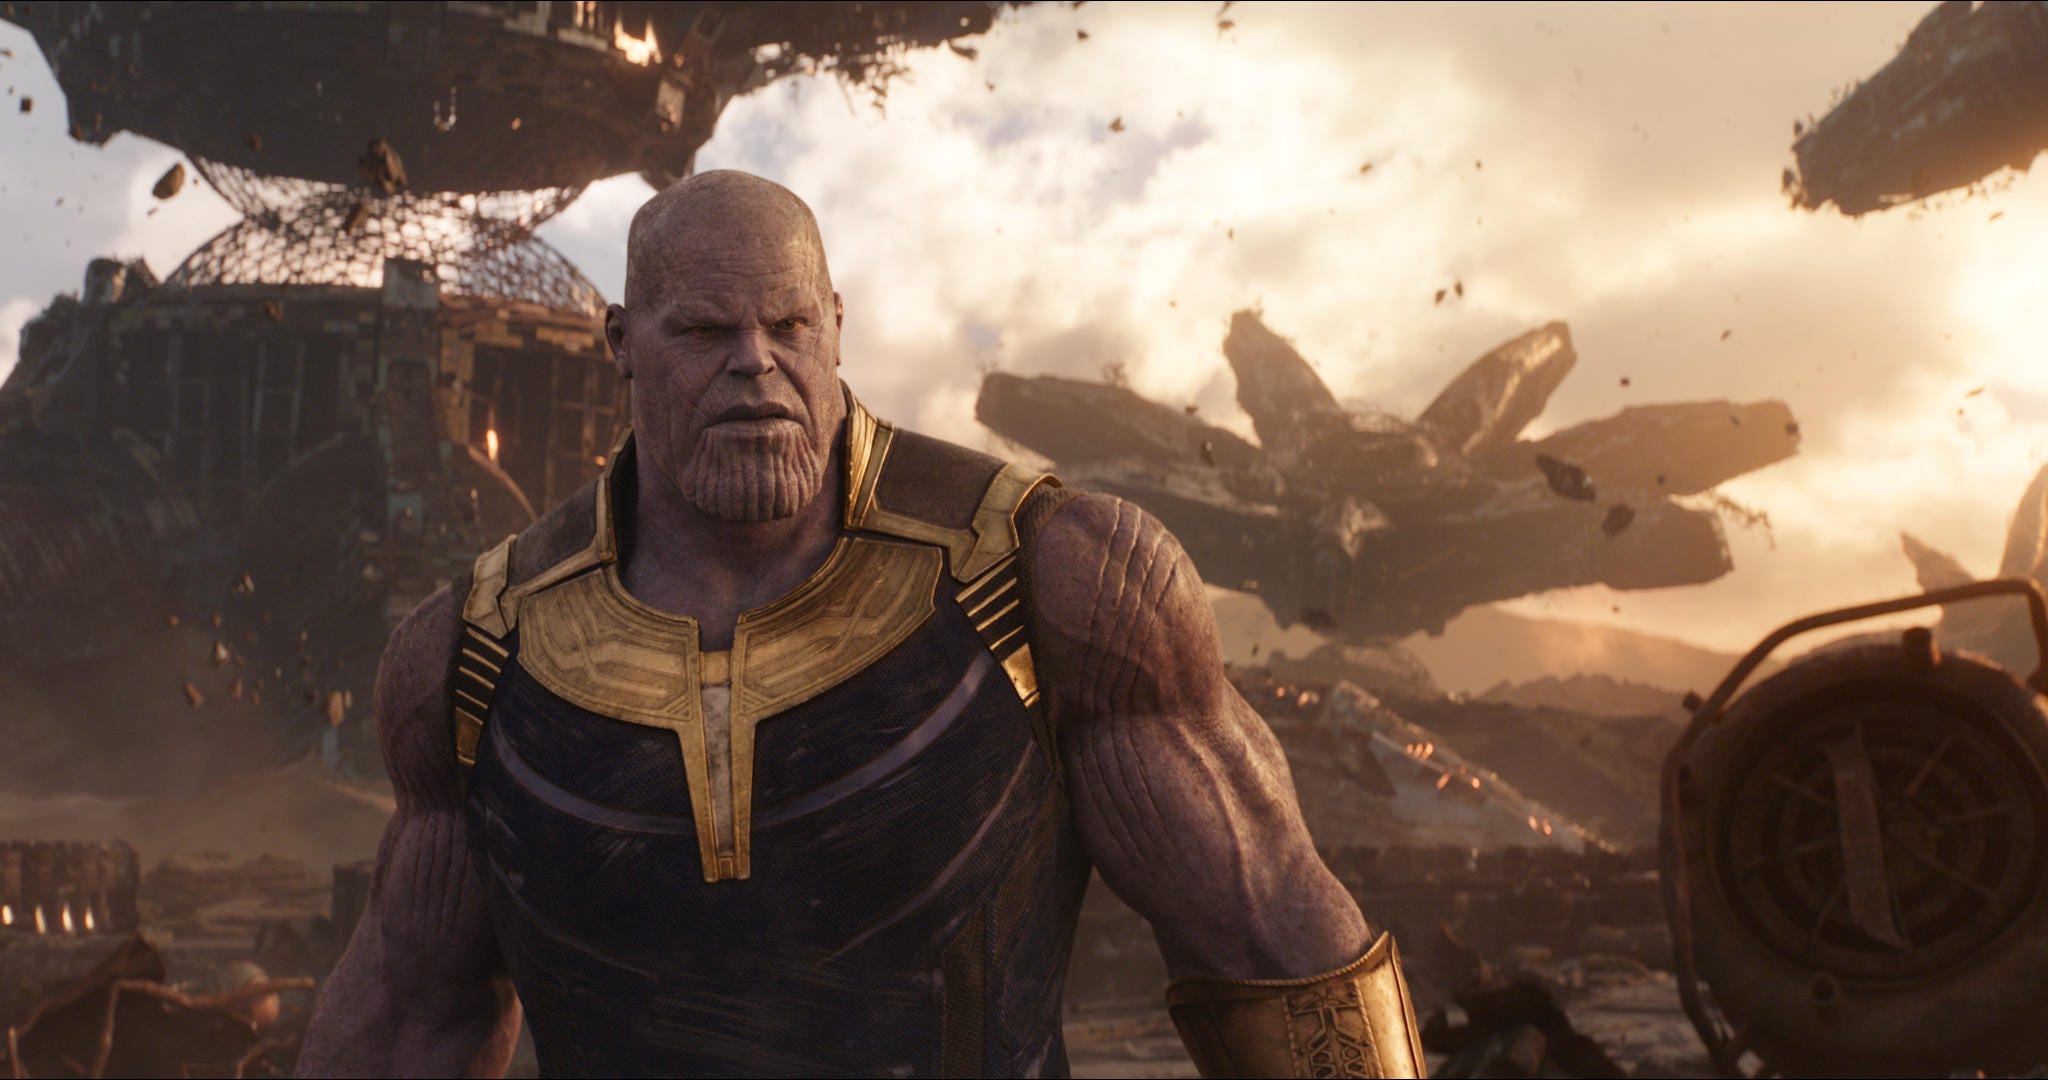 Avengers: Infinity War villain Thanos is invading Fortnite - CNET